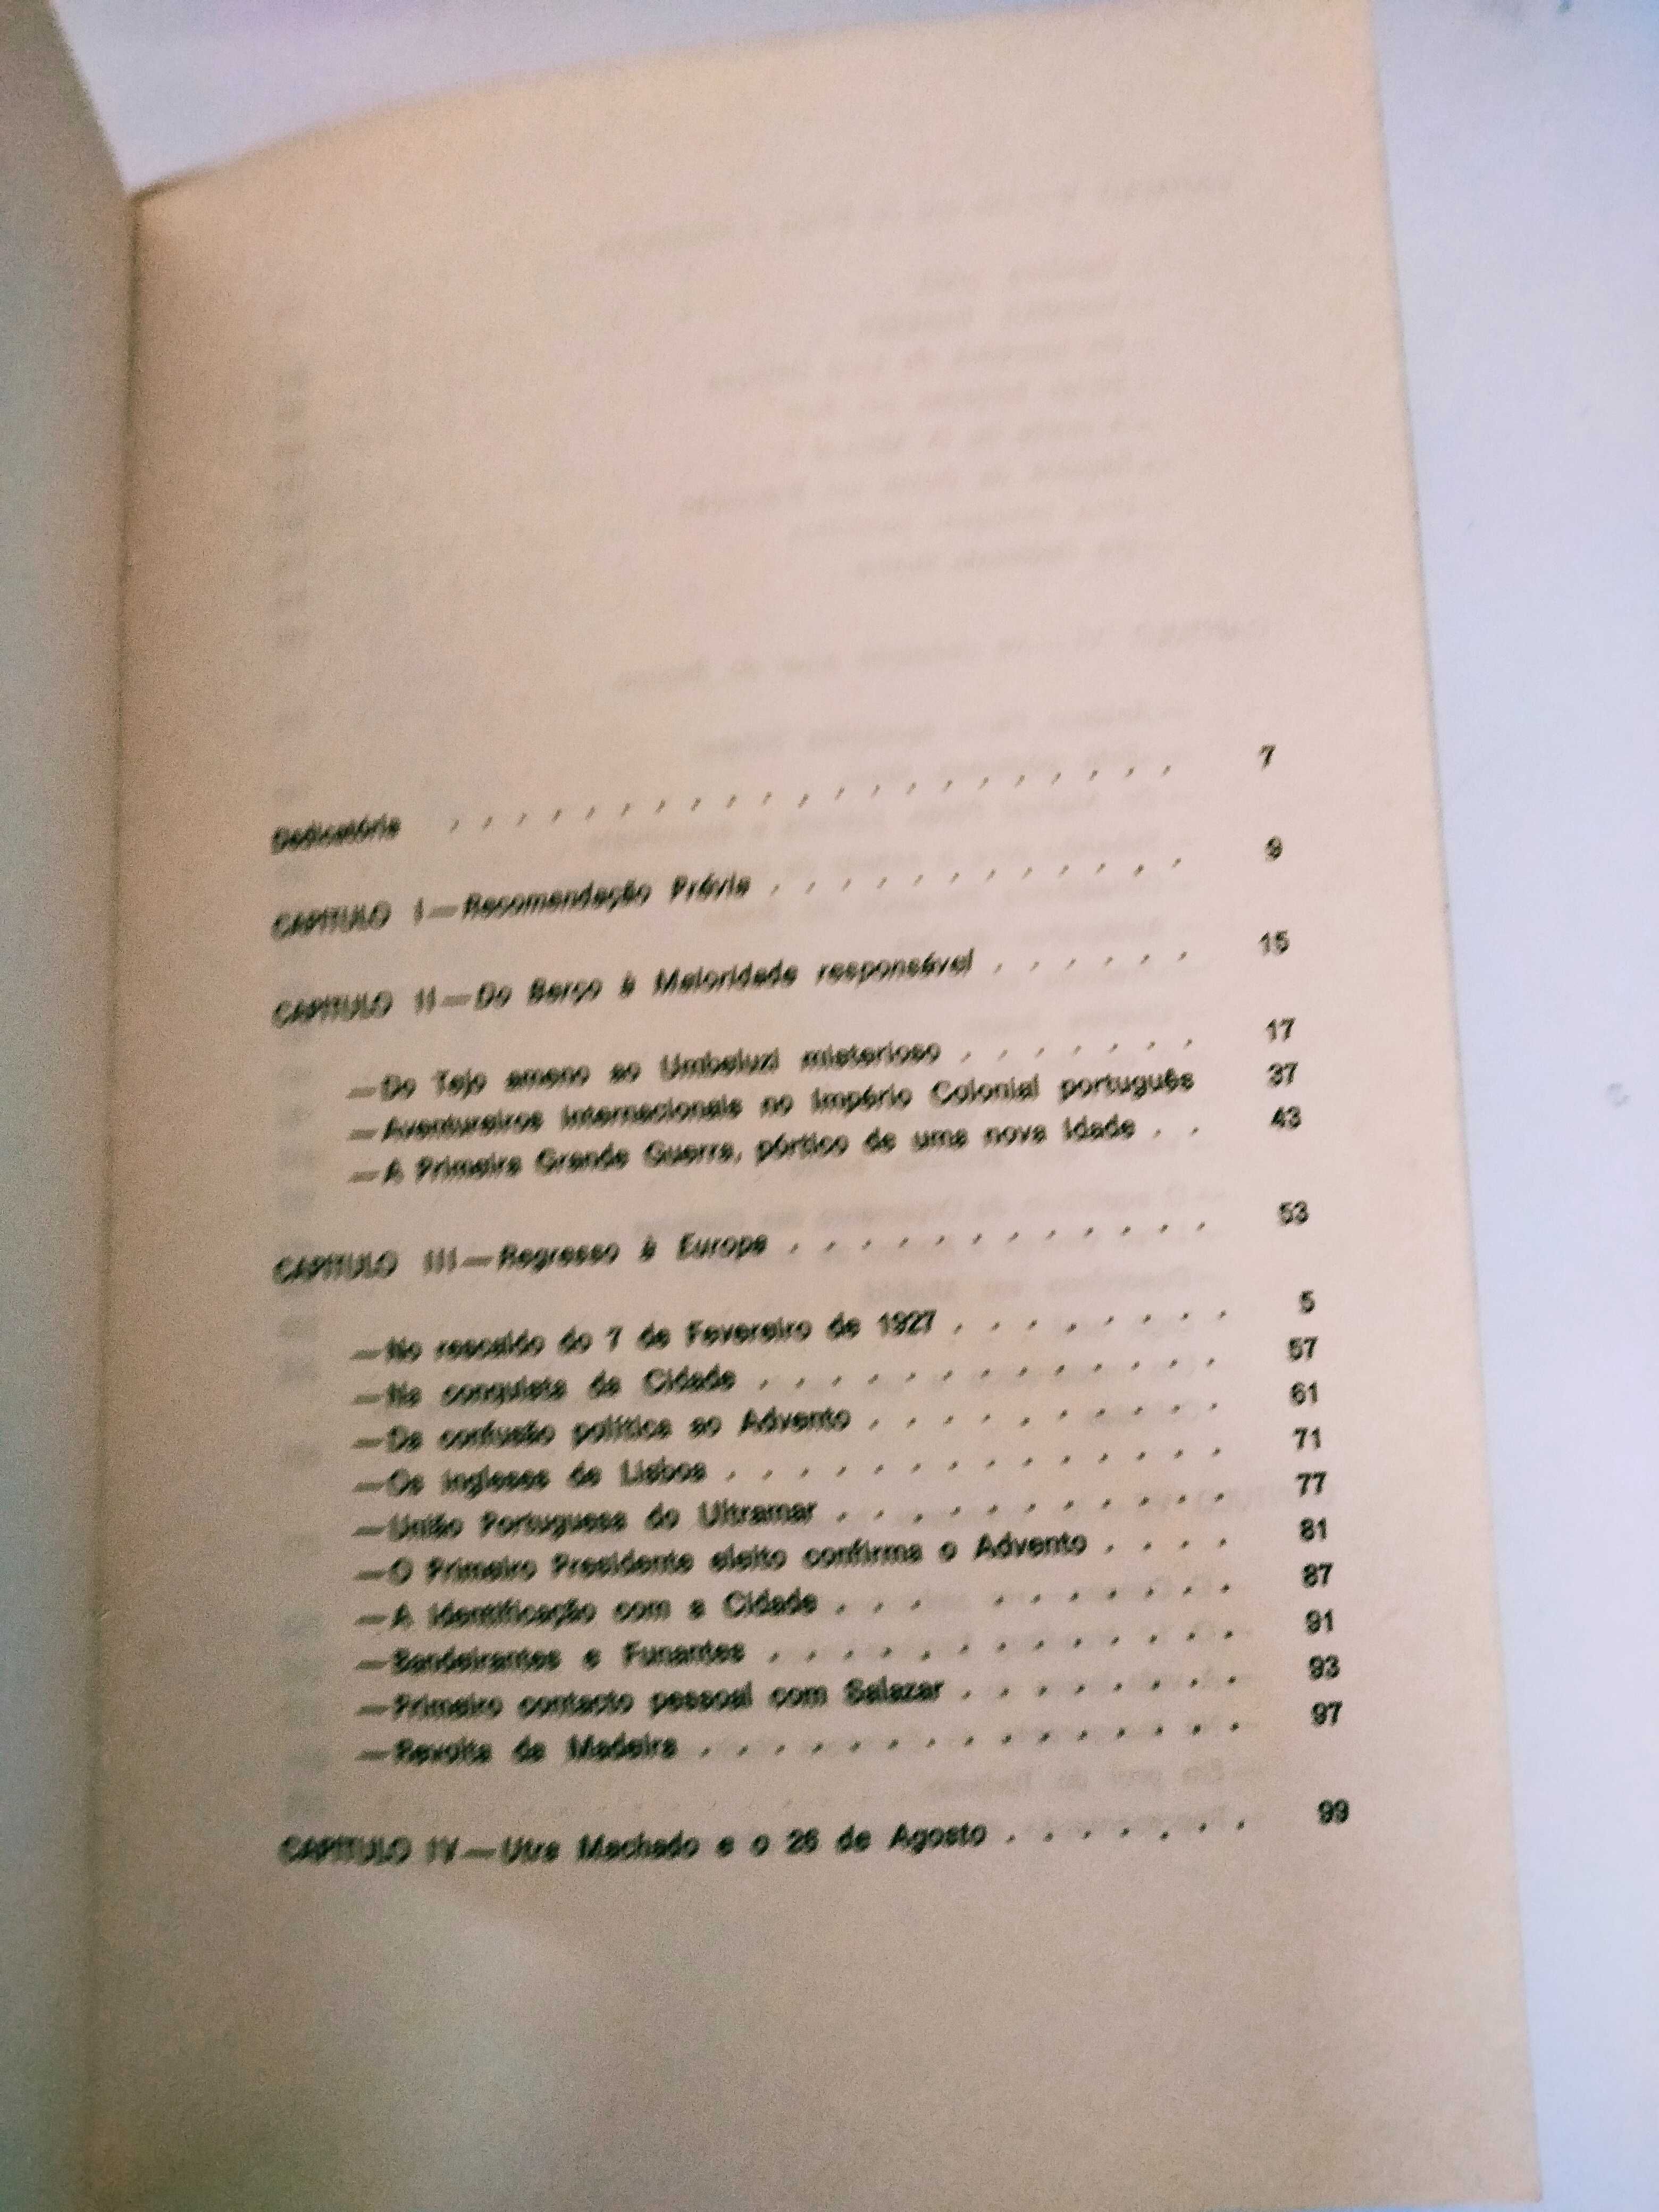 Memórias - Diário de um Inconformista (1901 a 1938)